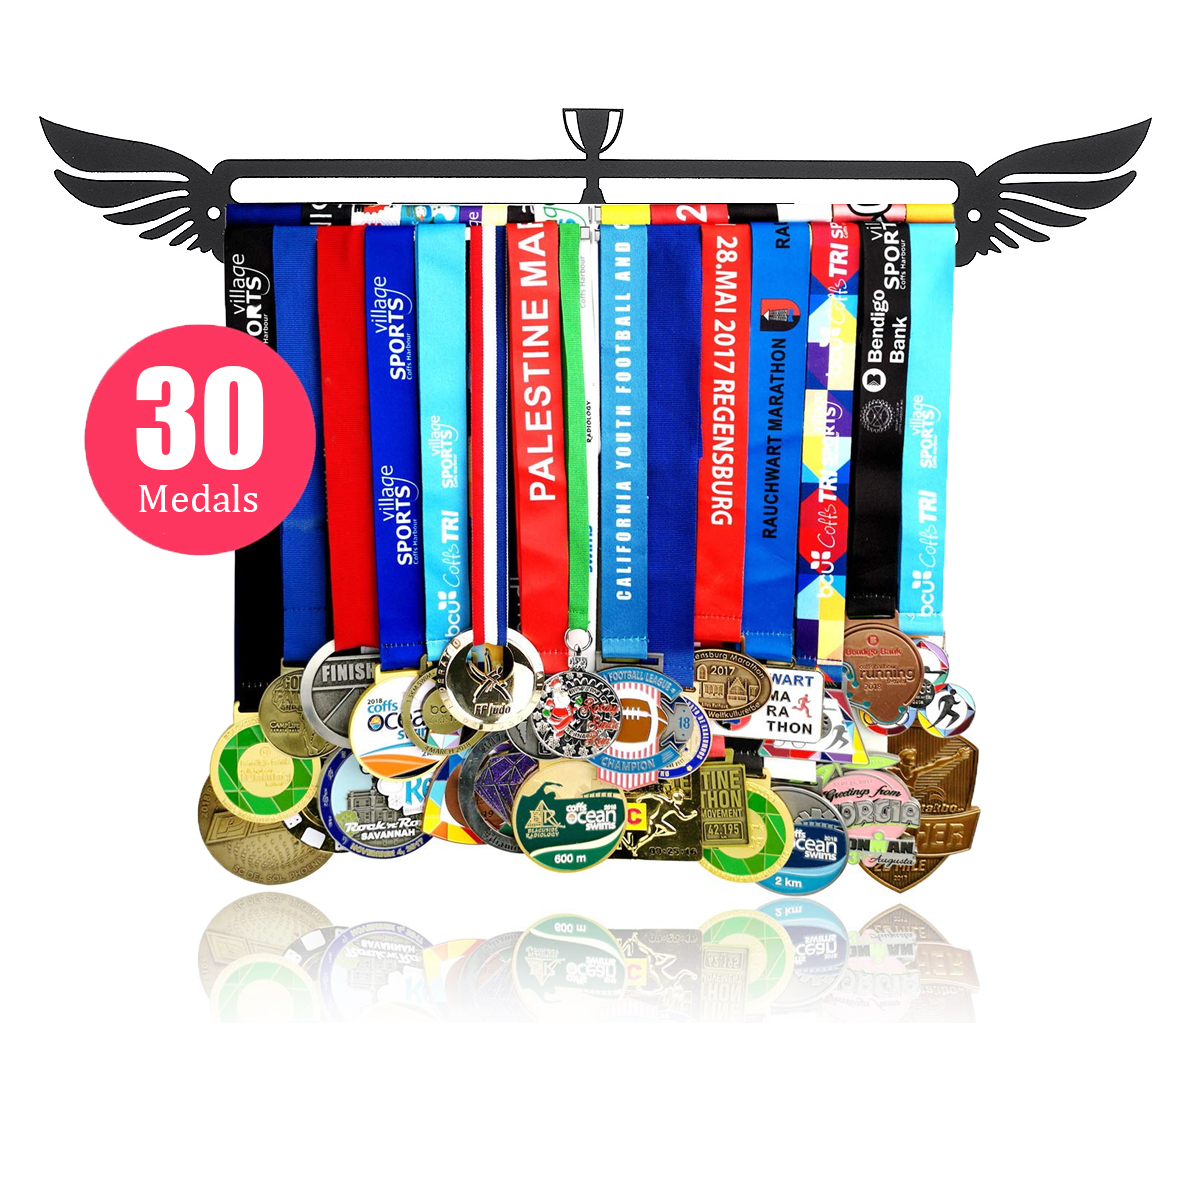 Sport-Medal-Hanger-Medal-Display-Rack-For-Running-Gymnastics-Medals-Display-Rack-Decorations-1560487-3